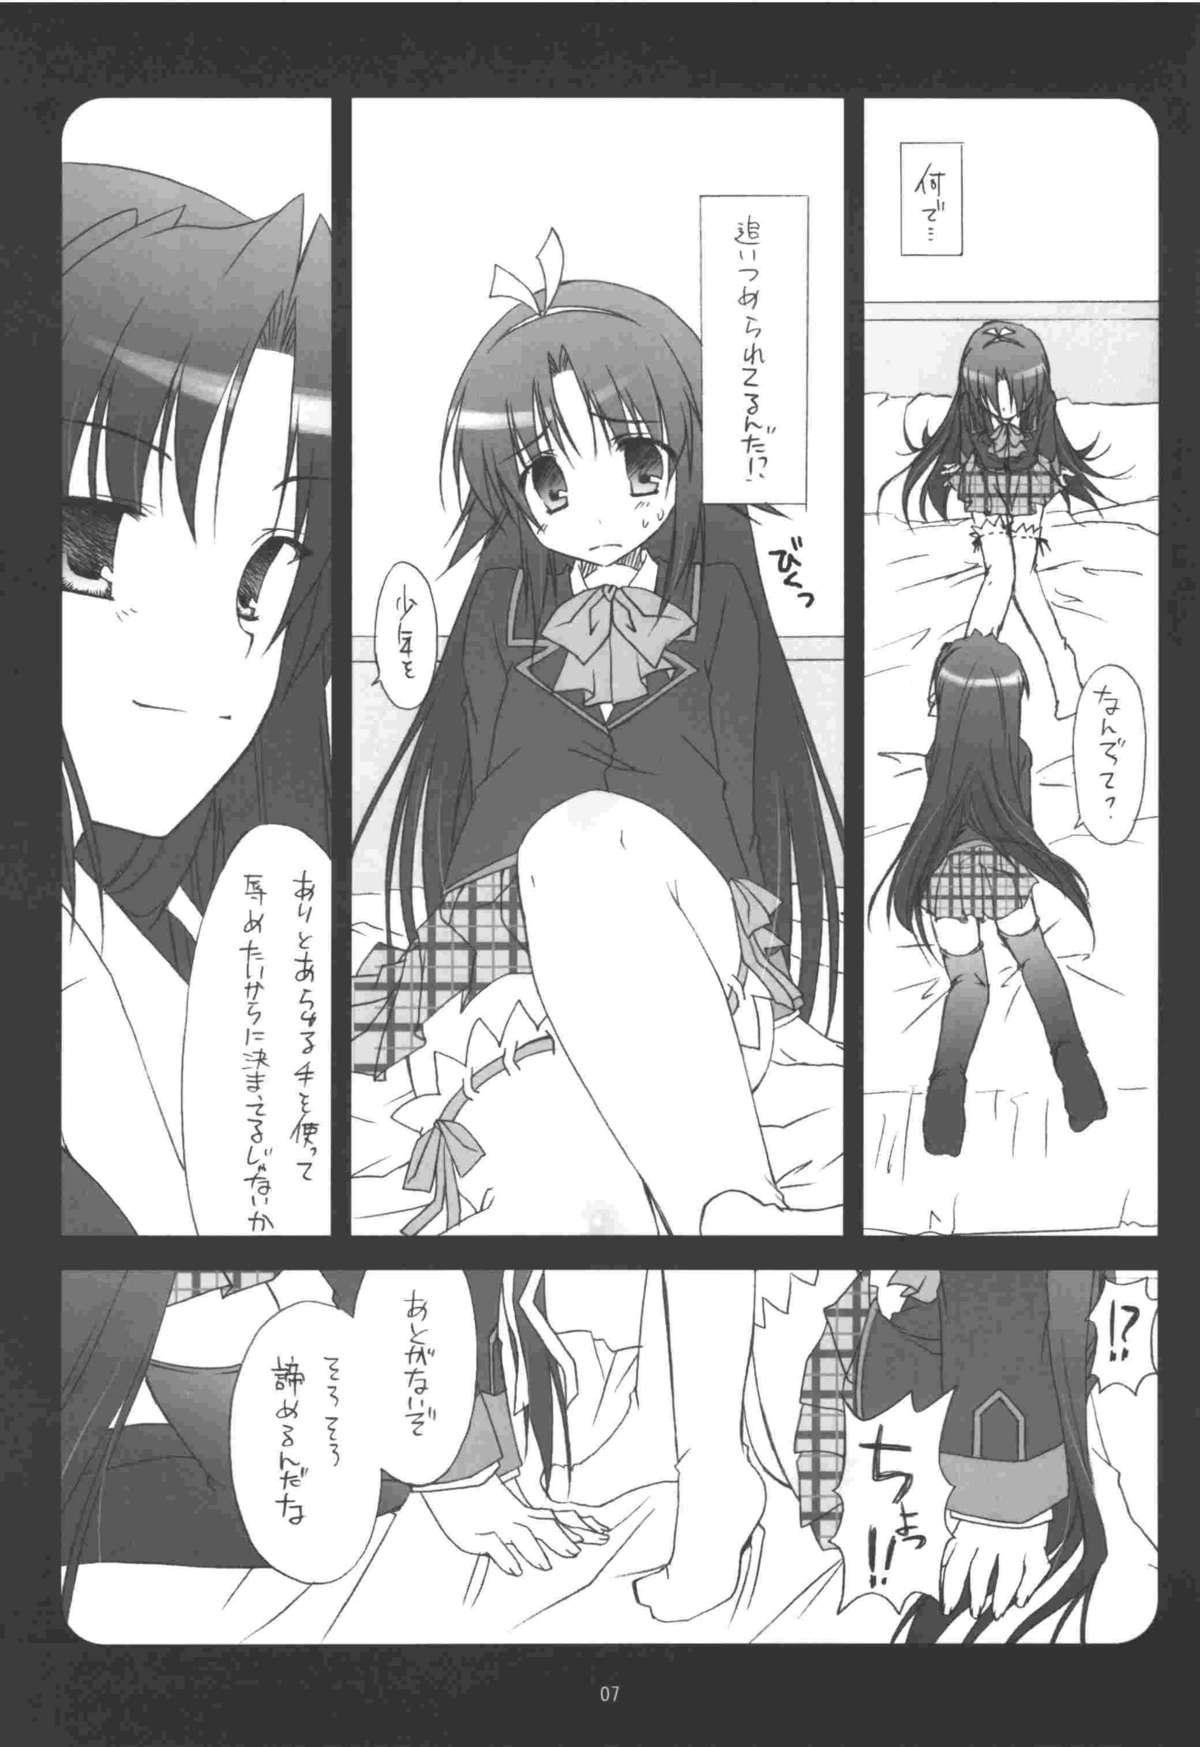 Orgame Riki-kun o, Aritoarayuru Te o Tsukatte Hazukashimetai - Little busters Adolescente - Page 7